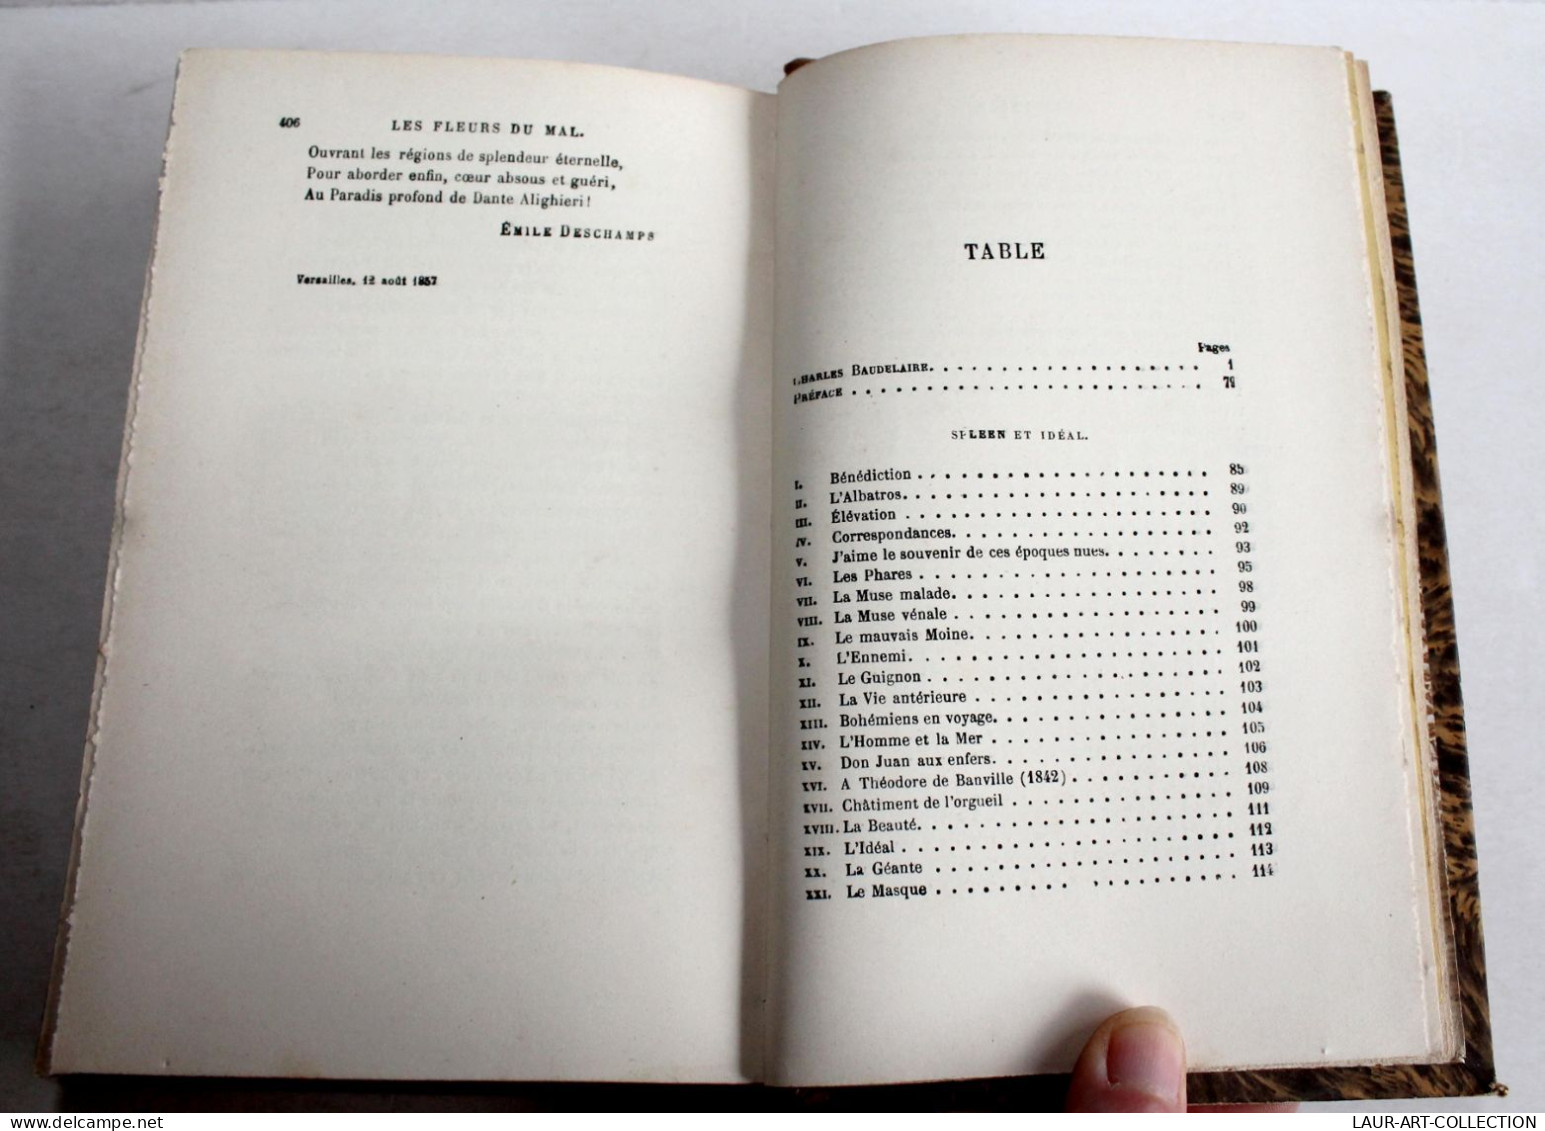 BAUDELAIRE OEUVRES COMPLETE FLEURS DU MAL EDITION DEFINITIVE NOTICE GAUTIER 1857, LIVRE ANCIEN XIXe SIECLE (2204.69) - 1801-1900